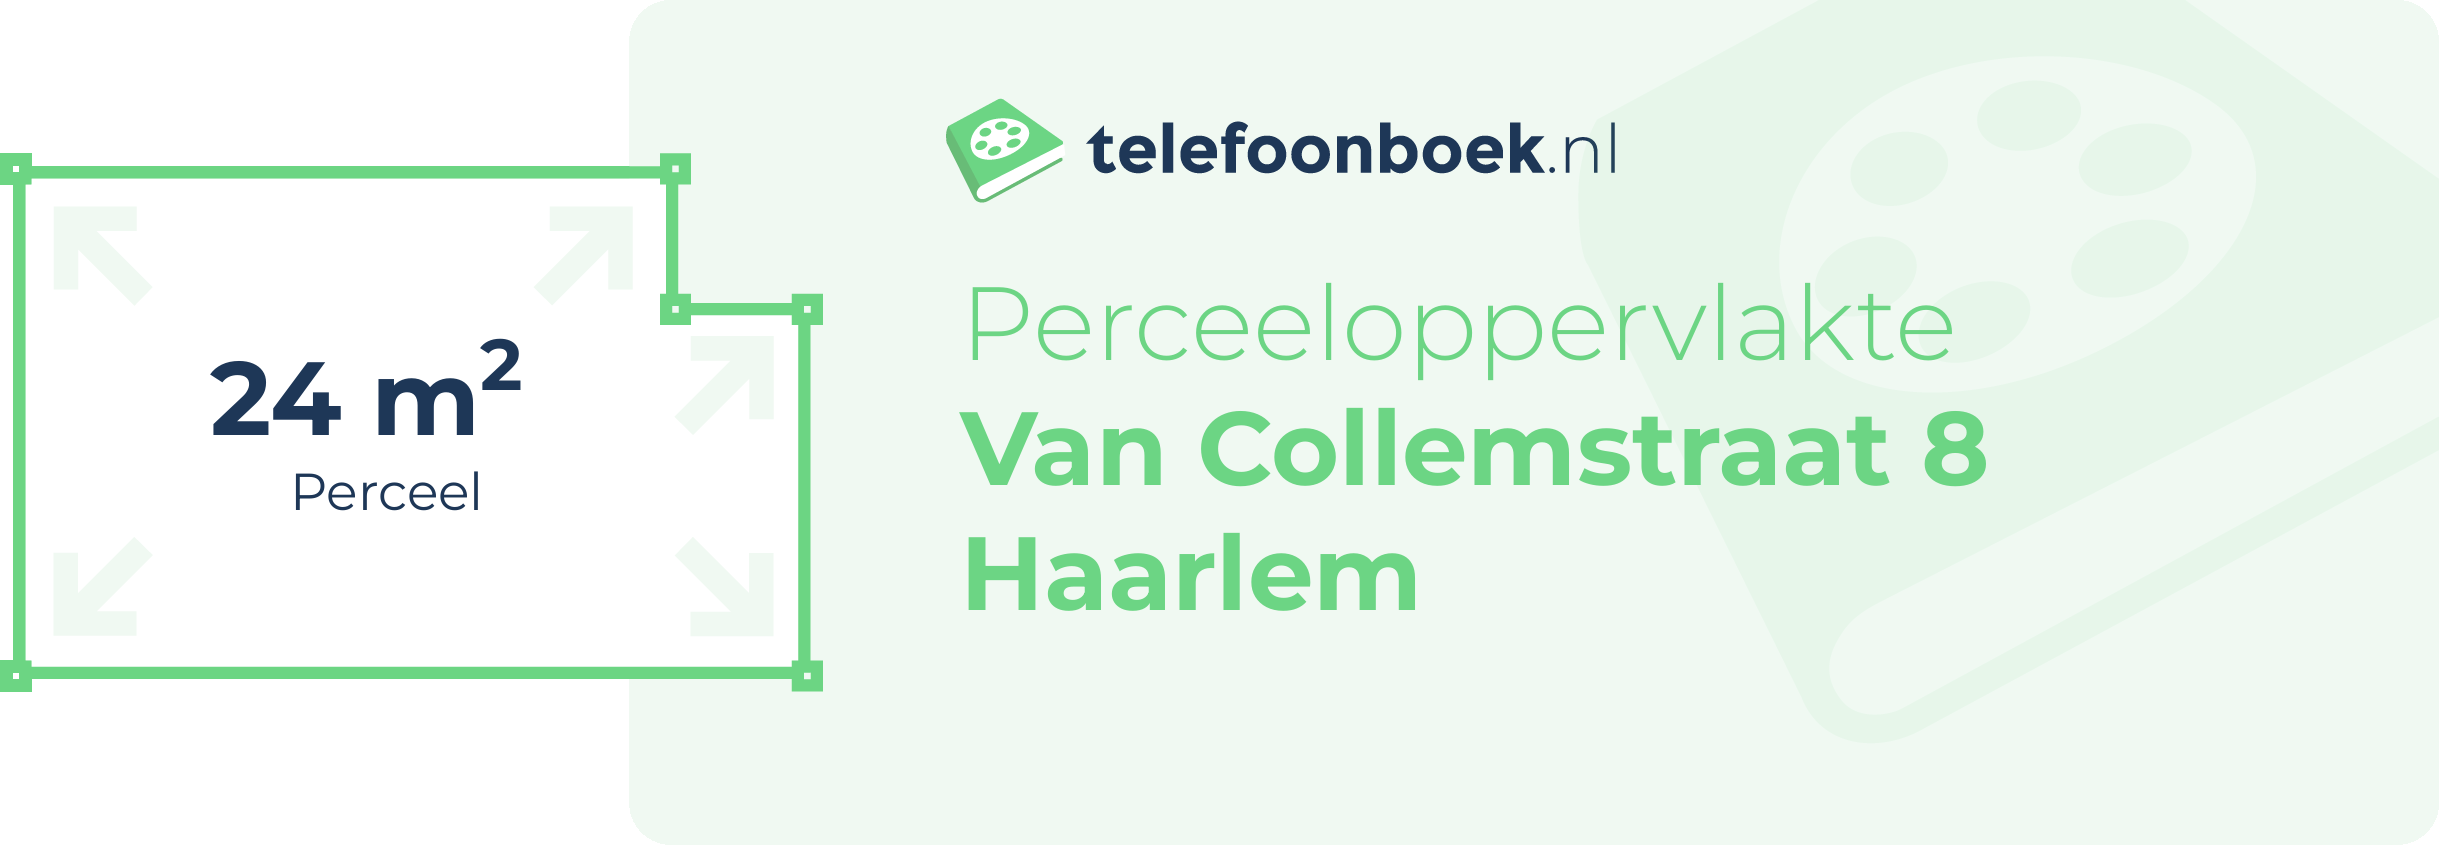 Perceeloppervlakte Van Collemstraat 8 Haarlem